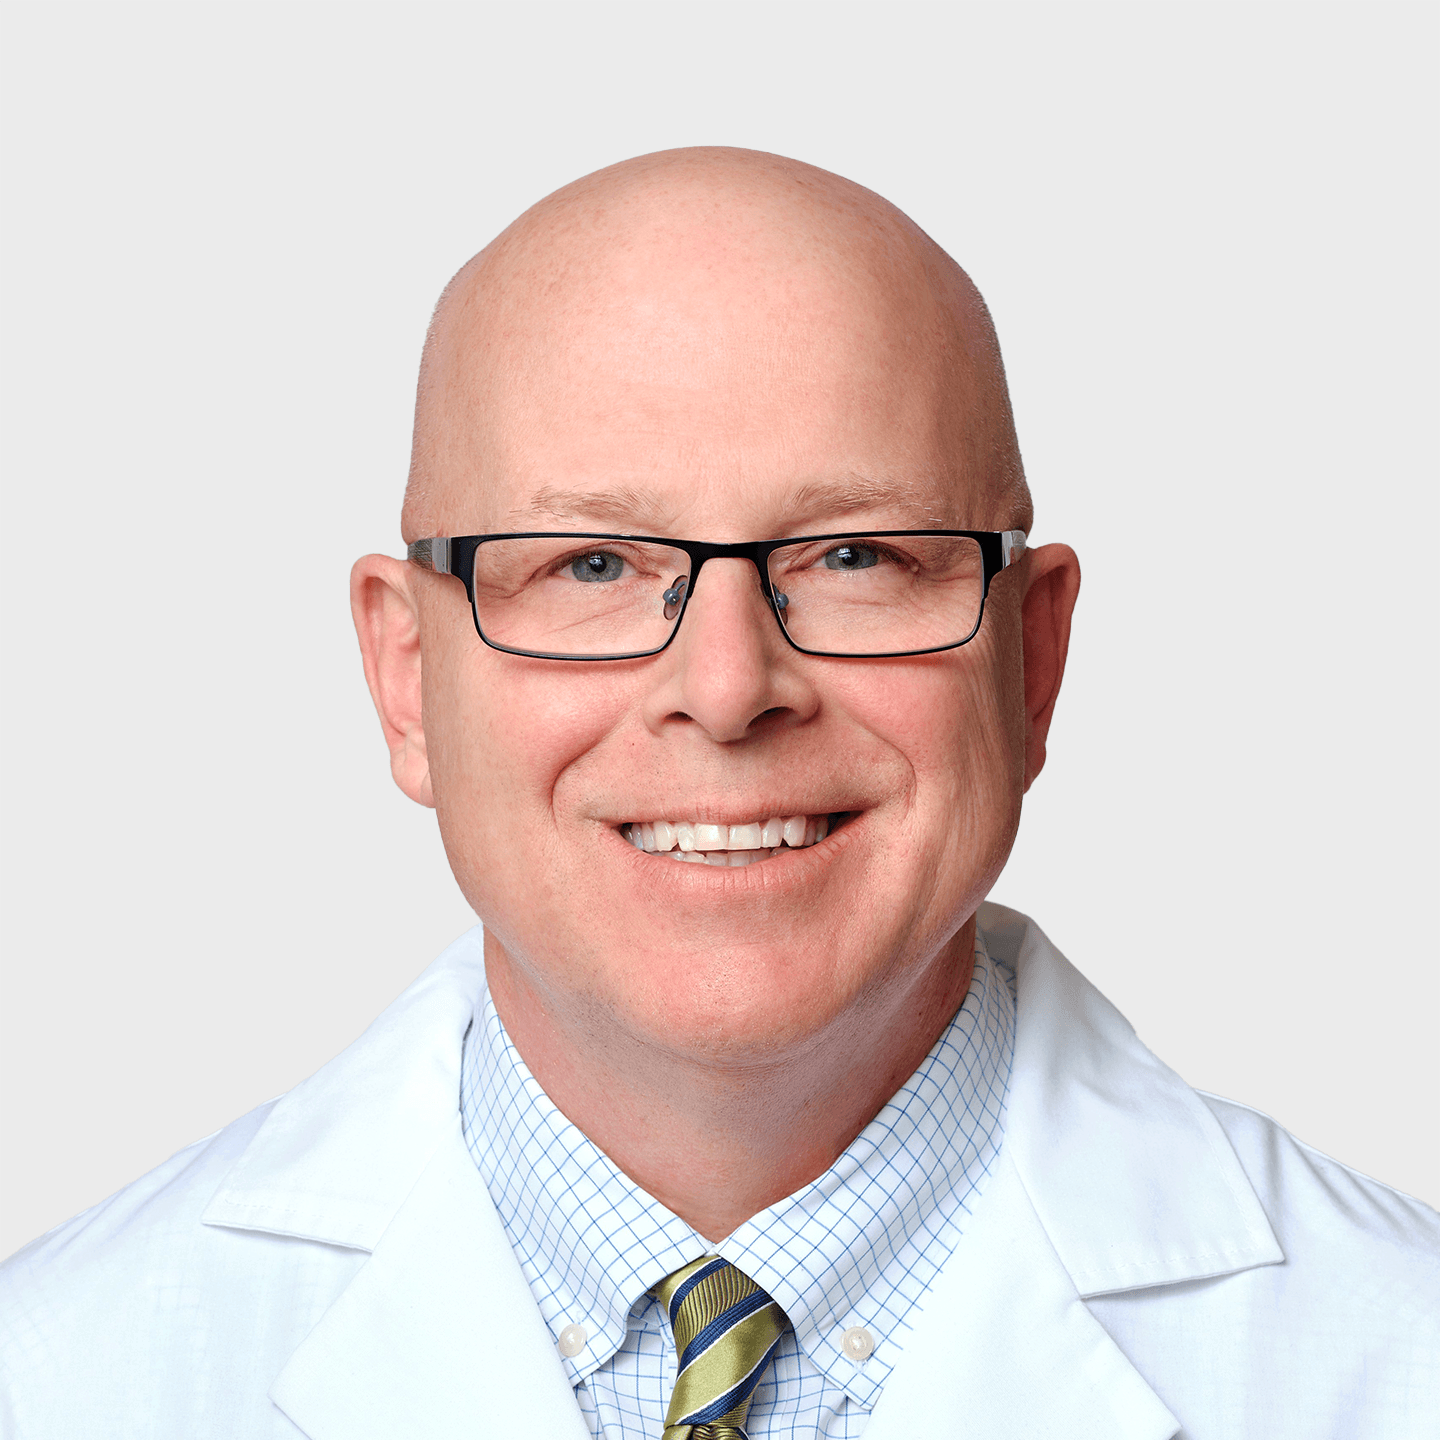 Physician Spotlight on Dr. Christopher Baker